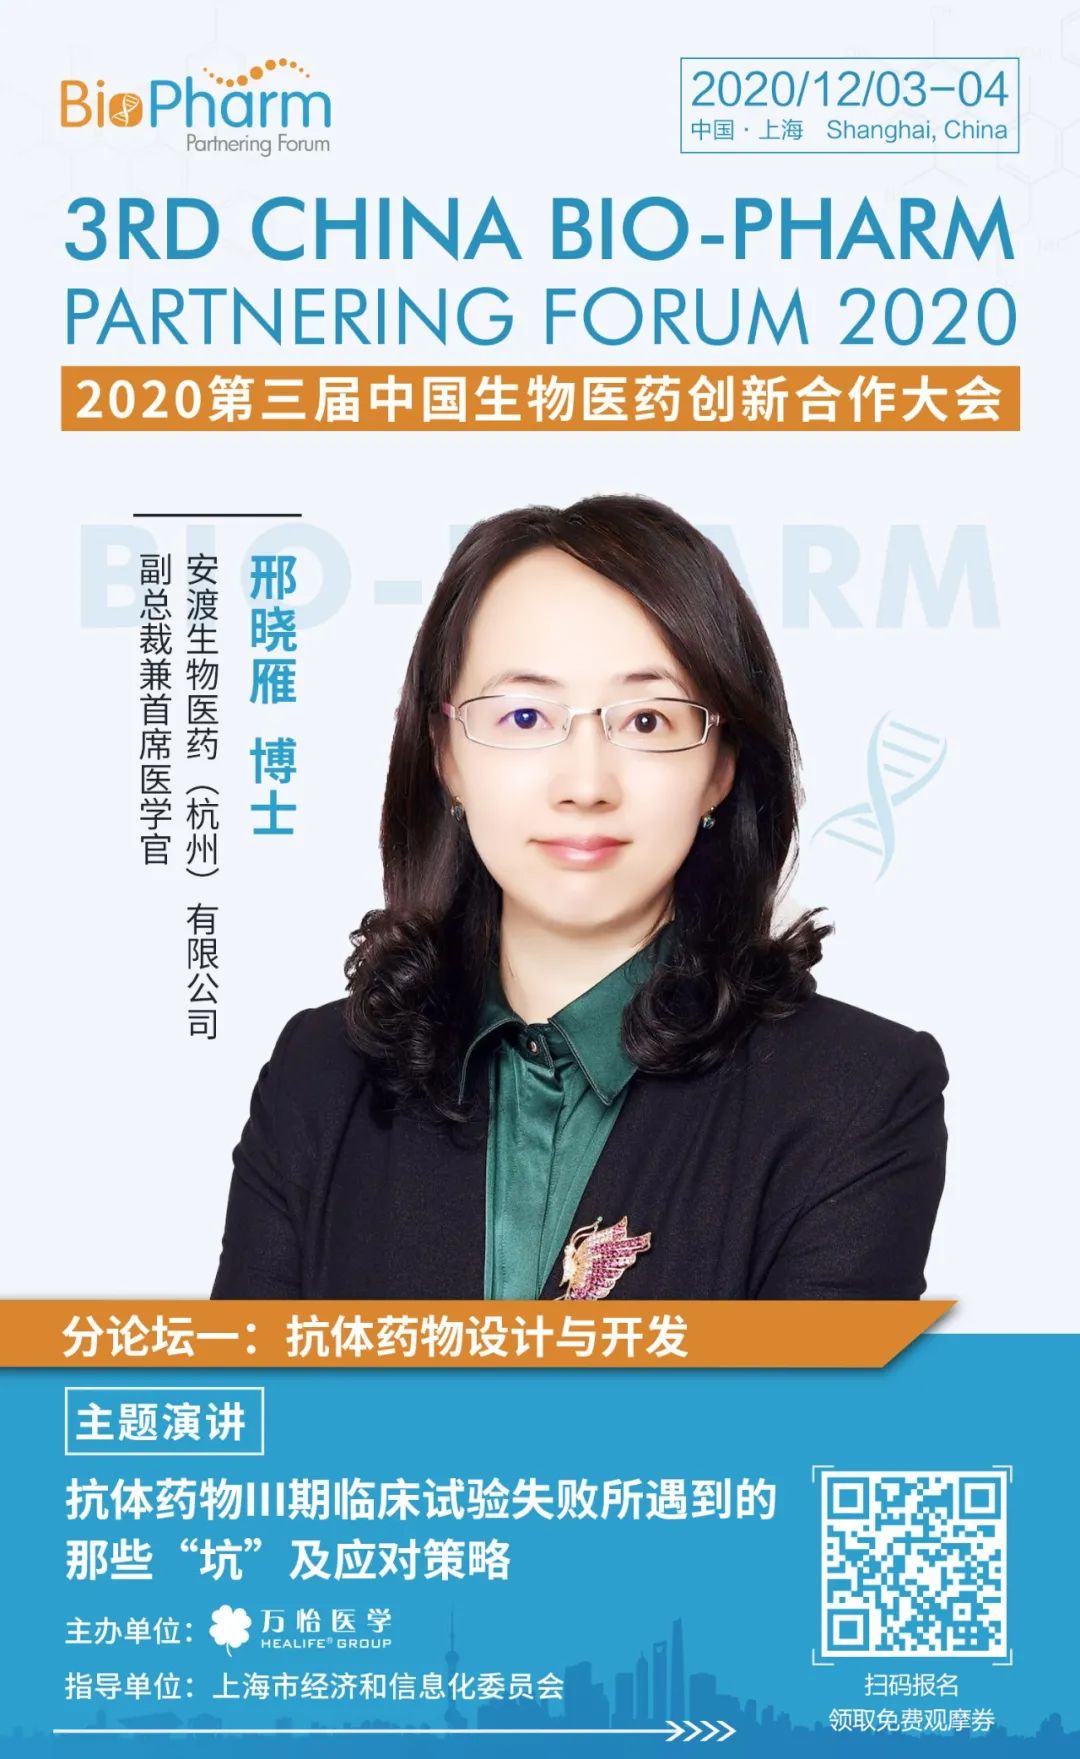 活动预告 | 2020第三届中国生物医药创新合作大会